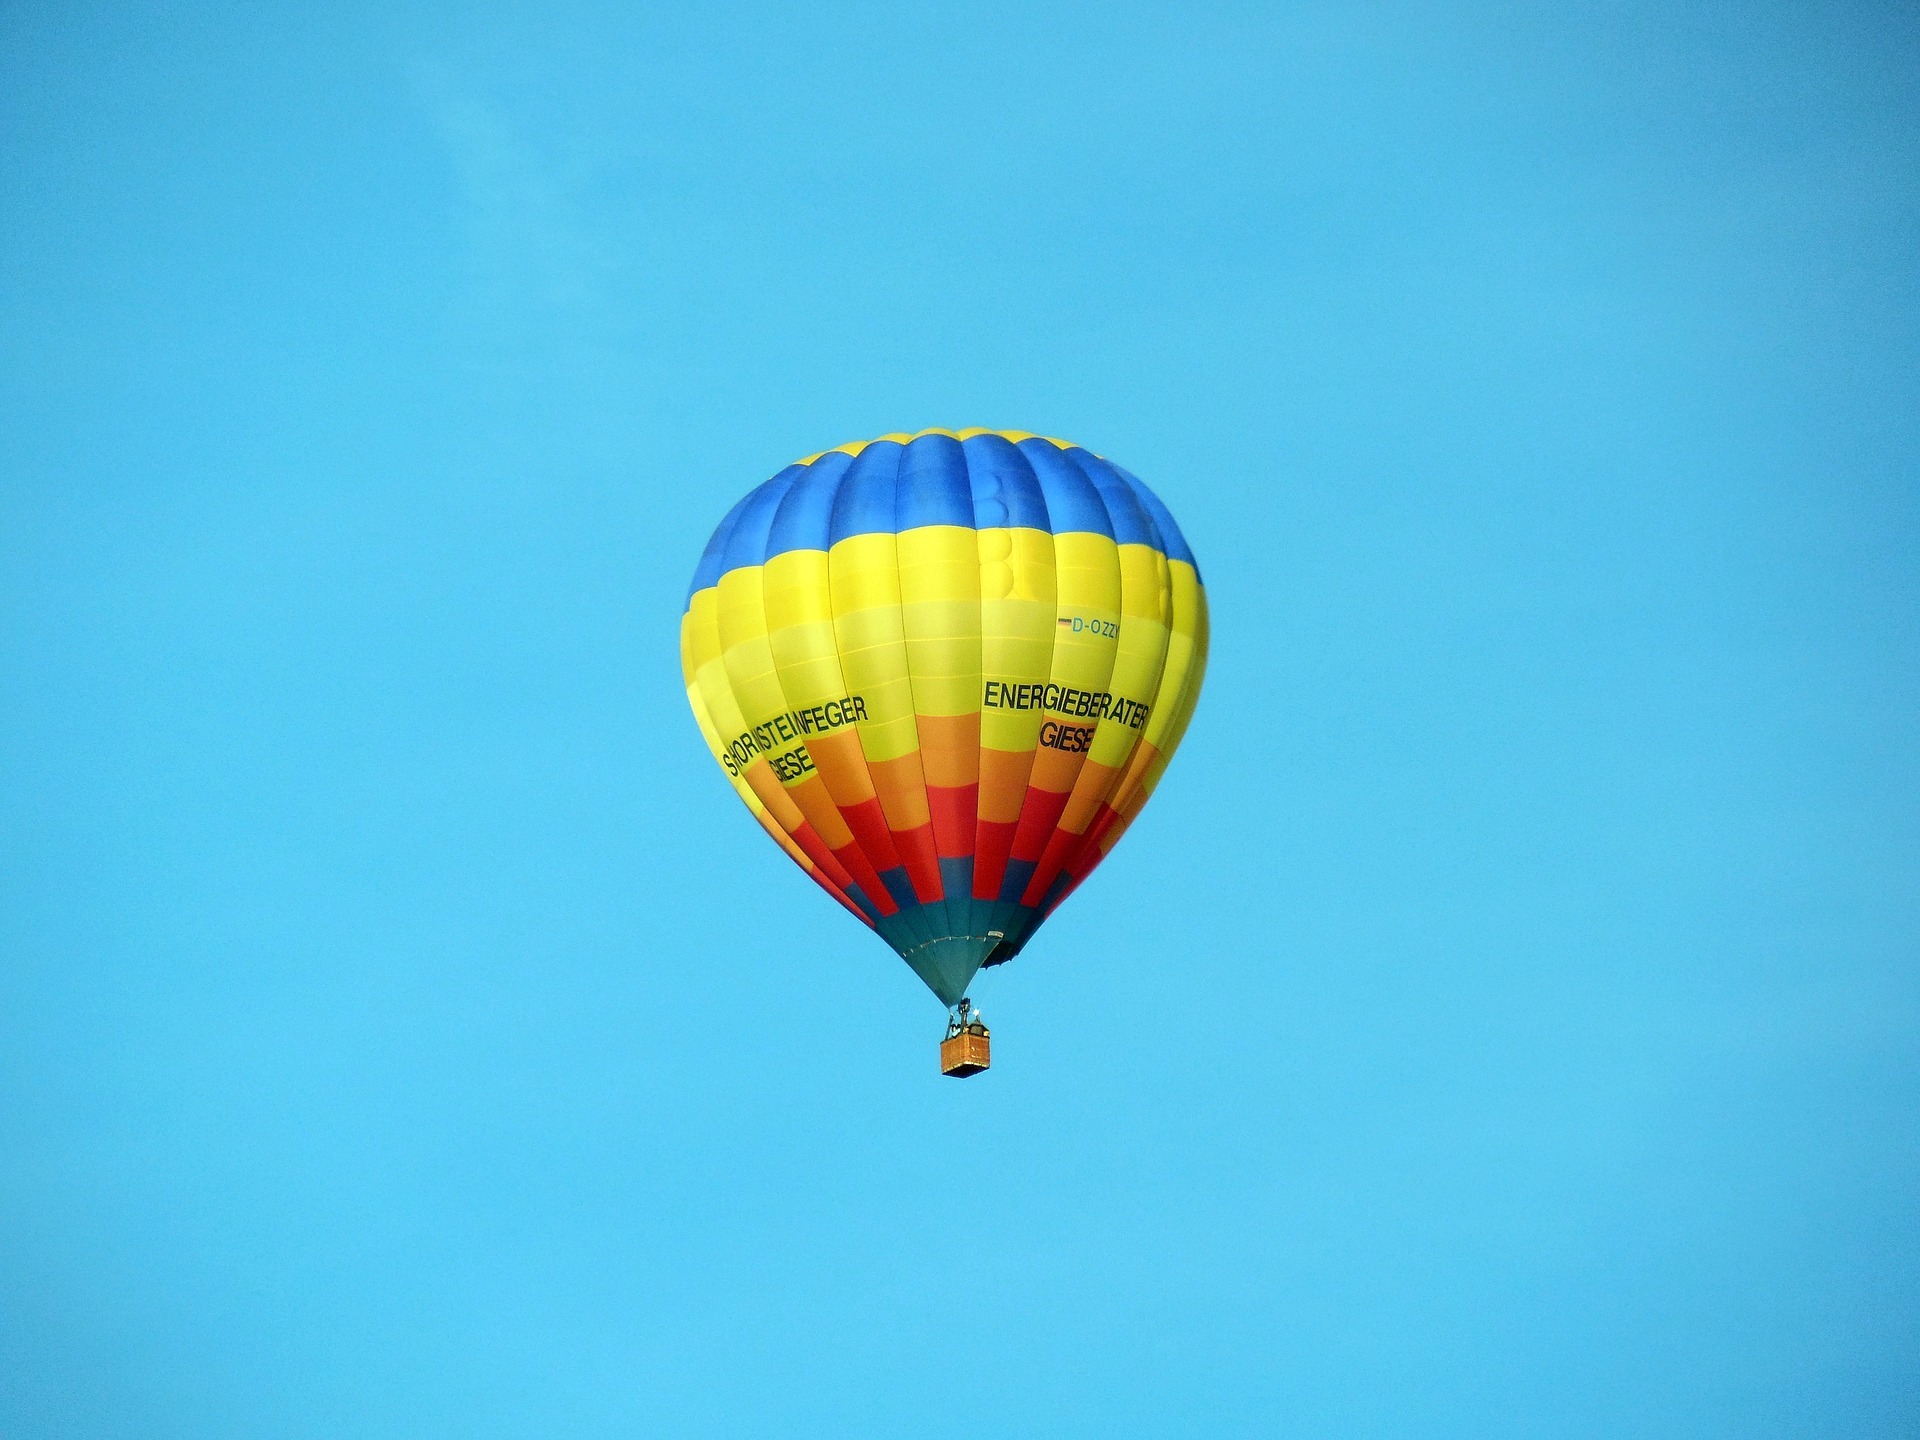 Ballonfahrt Niedersachsen, Heißluftballon am Himmel